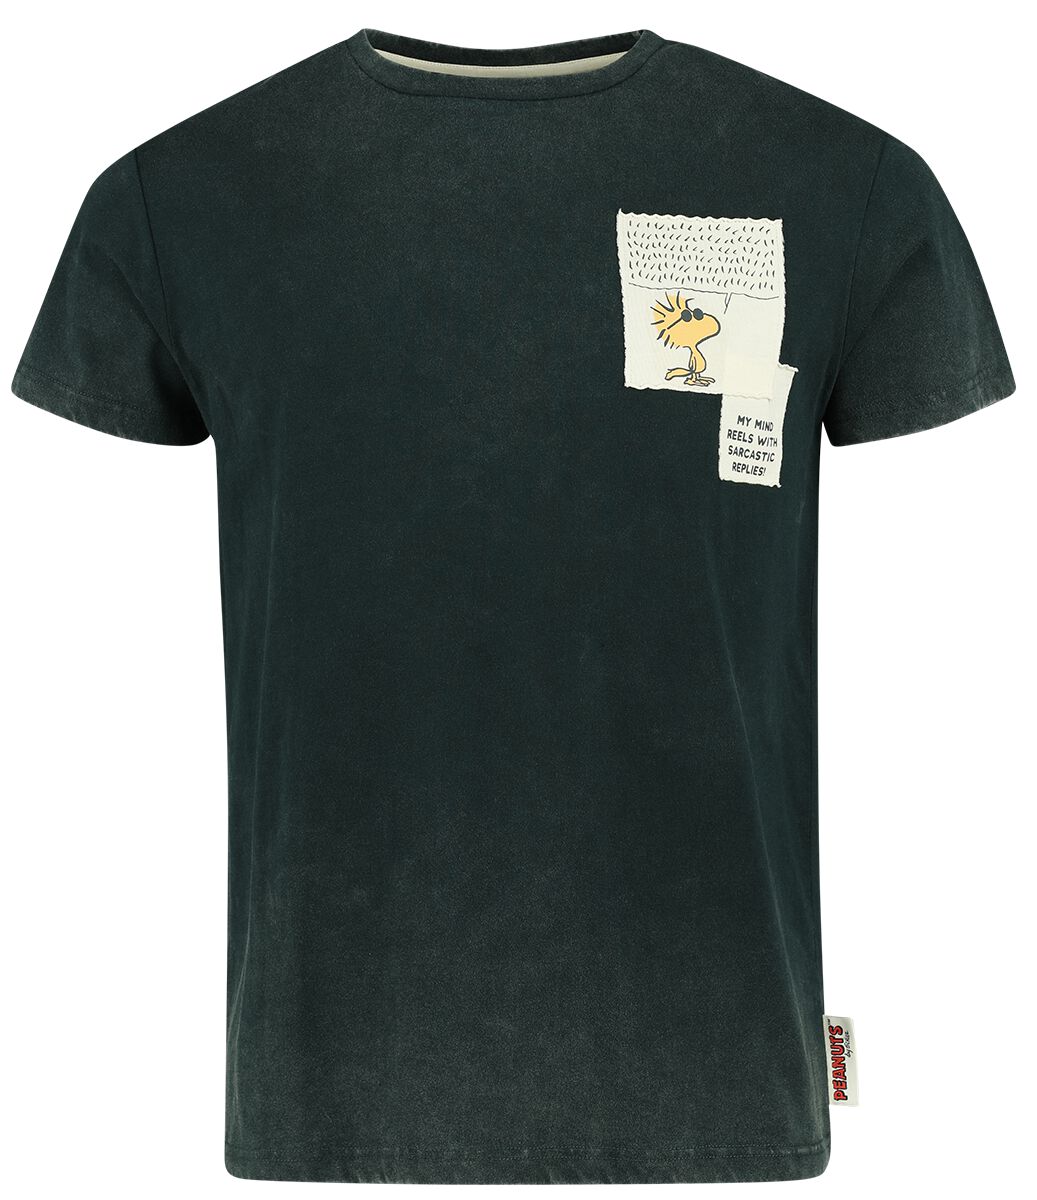 Peanuts T-Shirt - The Sarcasm Society - S bis XXL - für Männer - Größe XXL - dunkelgrün  - EMP exklusives Merchandise!